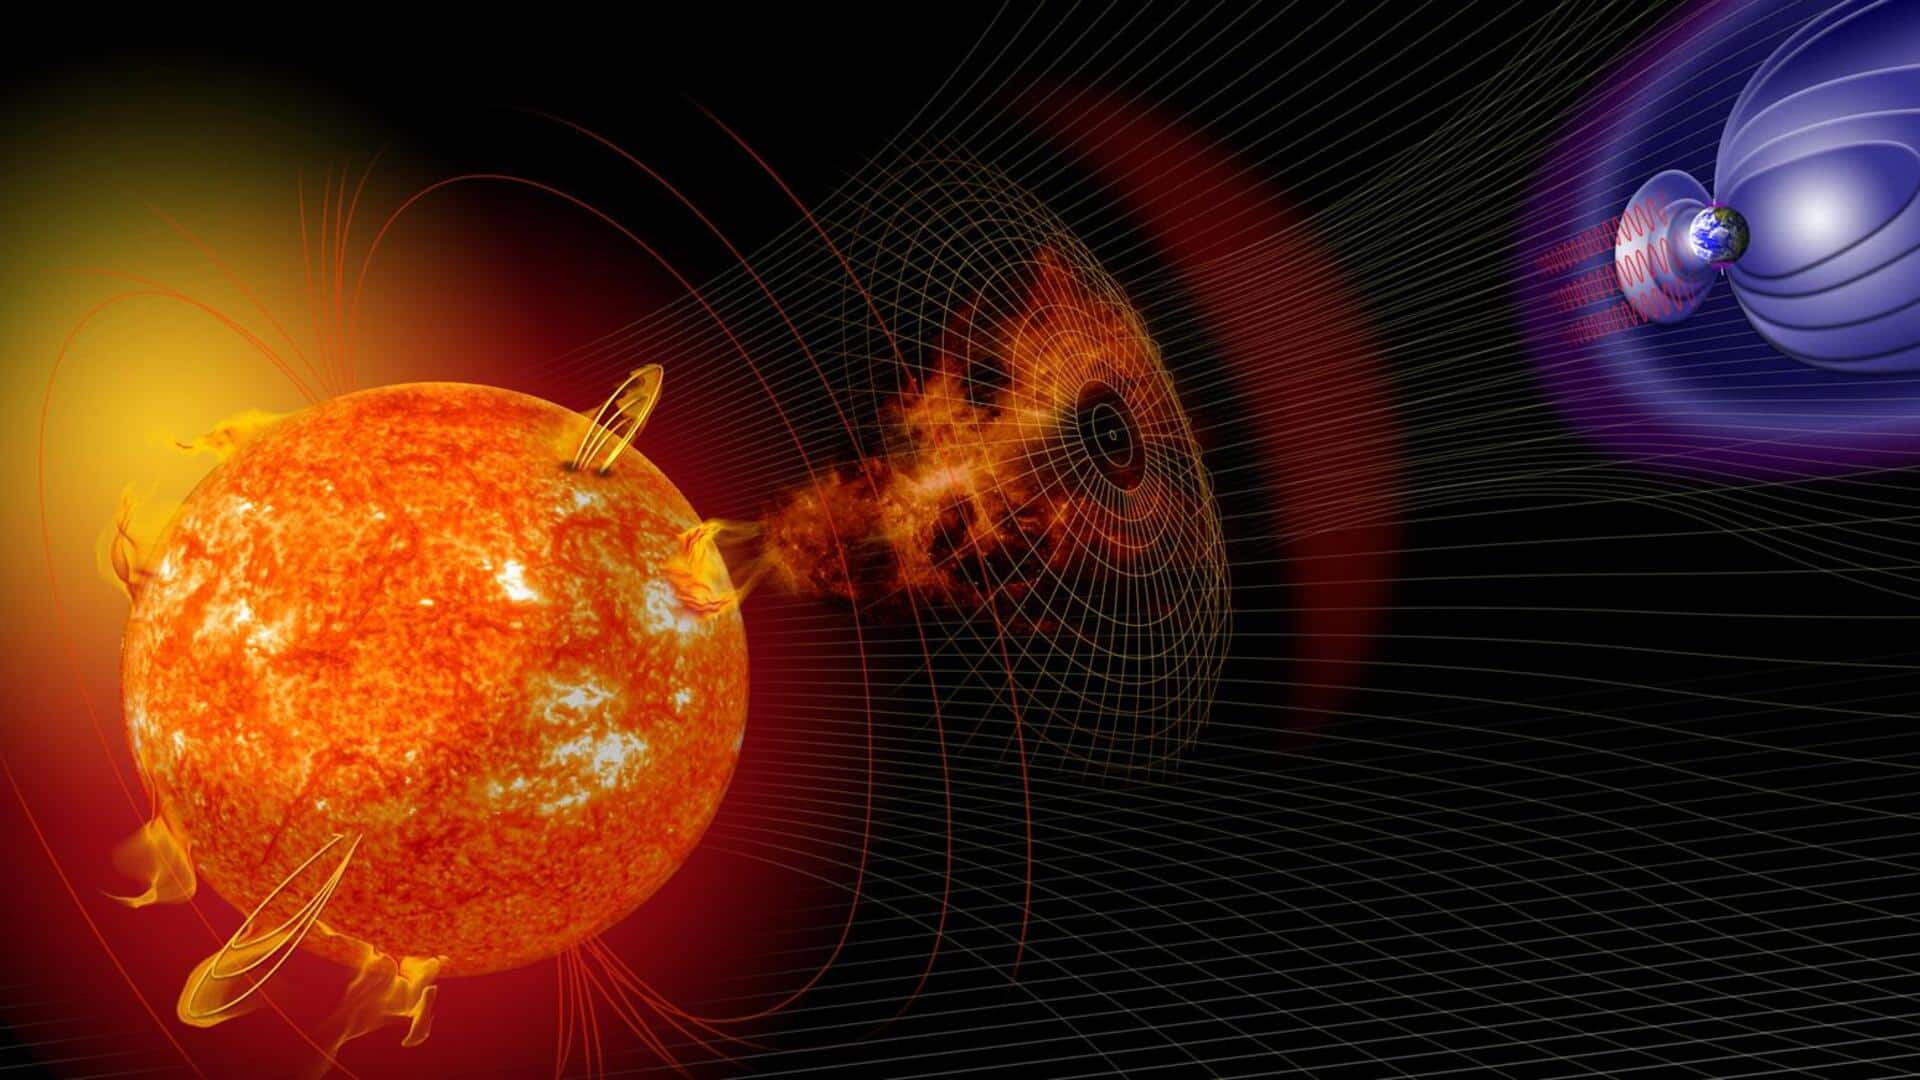 सनस्पॉट में विस्फोट से निकला सोलर फ्लेयर, पृथ्वी को है यह खतरा 